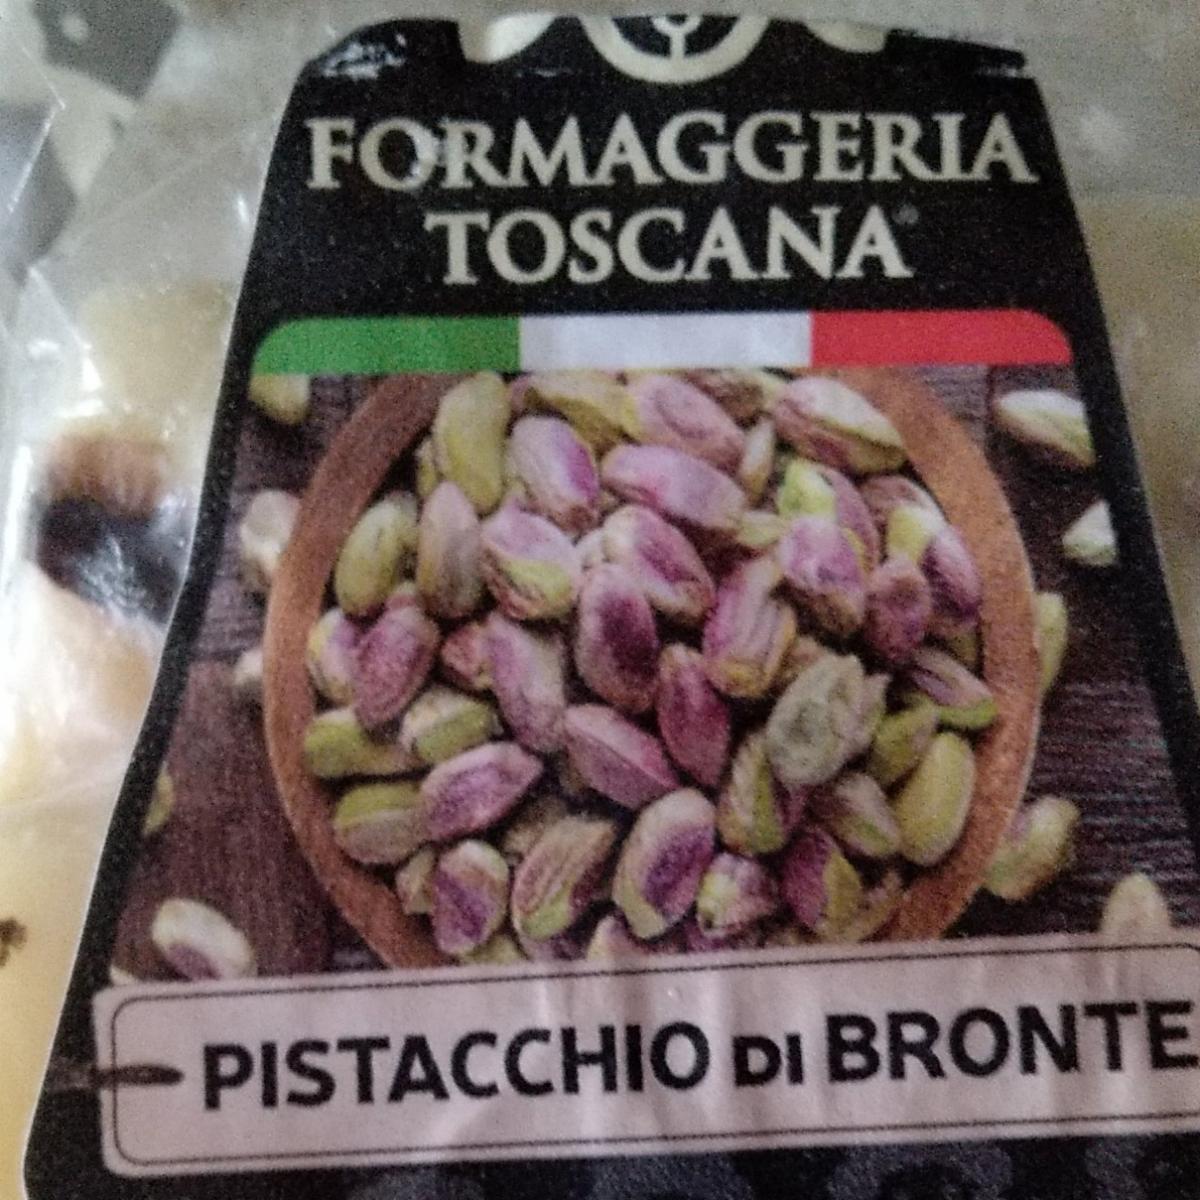 Fotografie - Formaggeria Toscana Pistacchio di Bronte